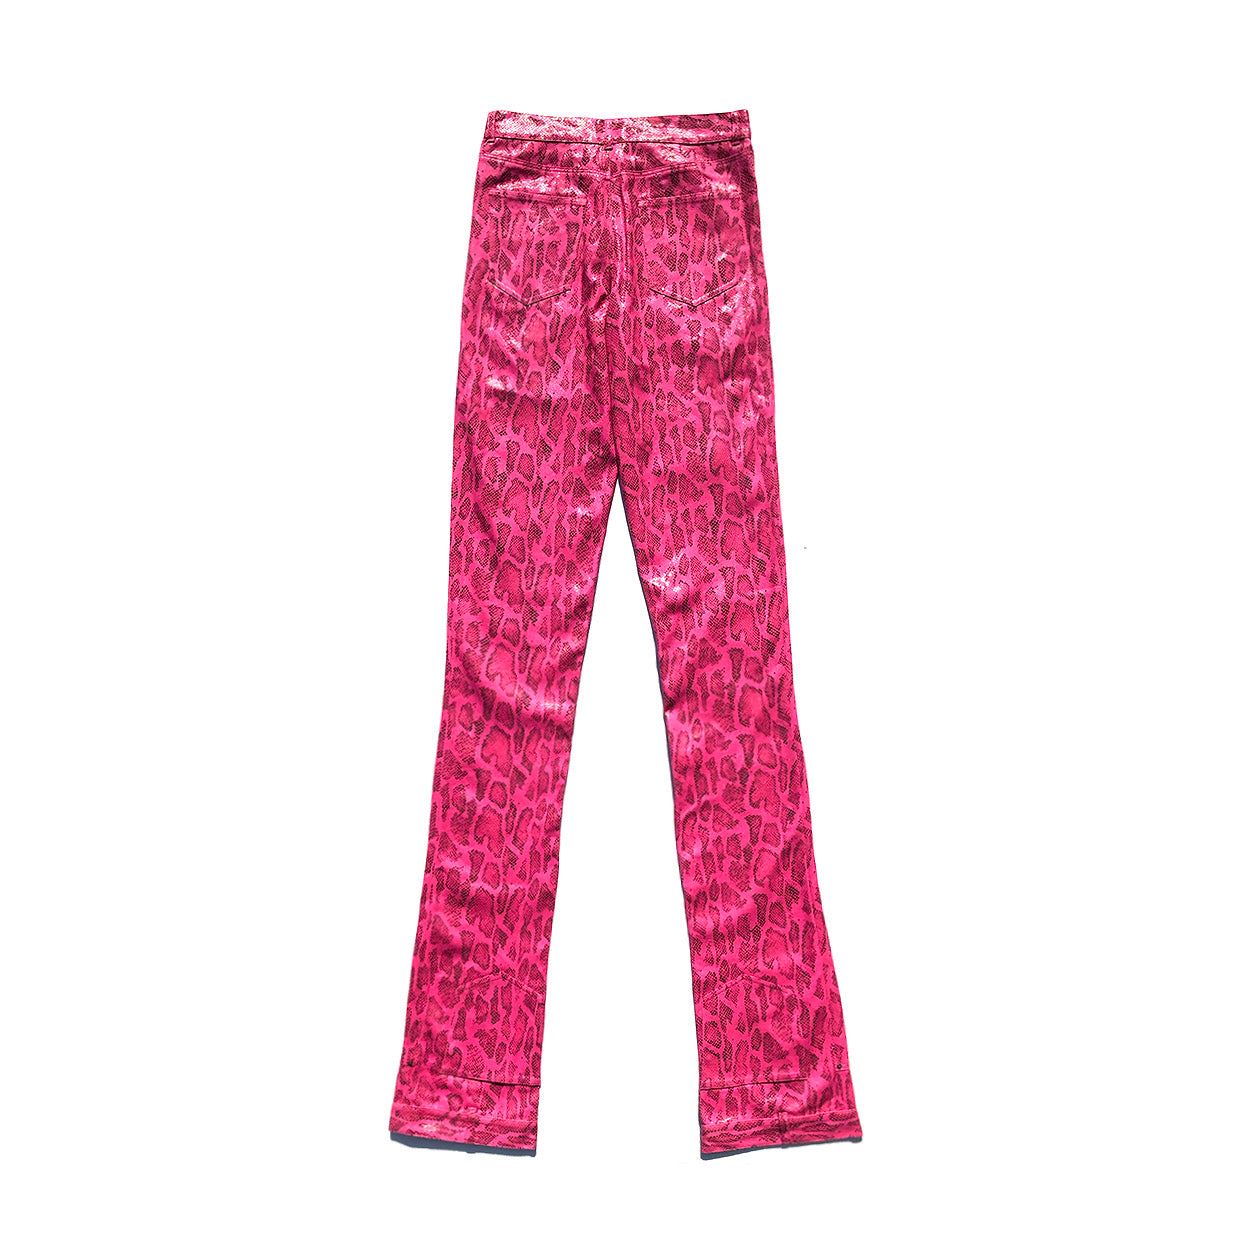 AONE4SURE Pink Slatt Jacket&Pants